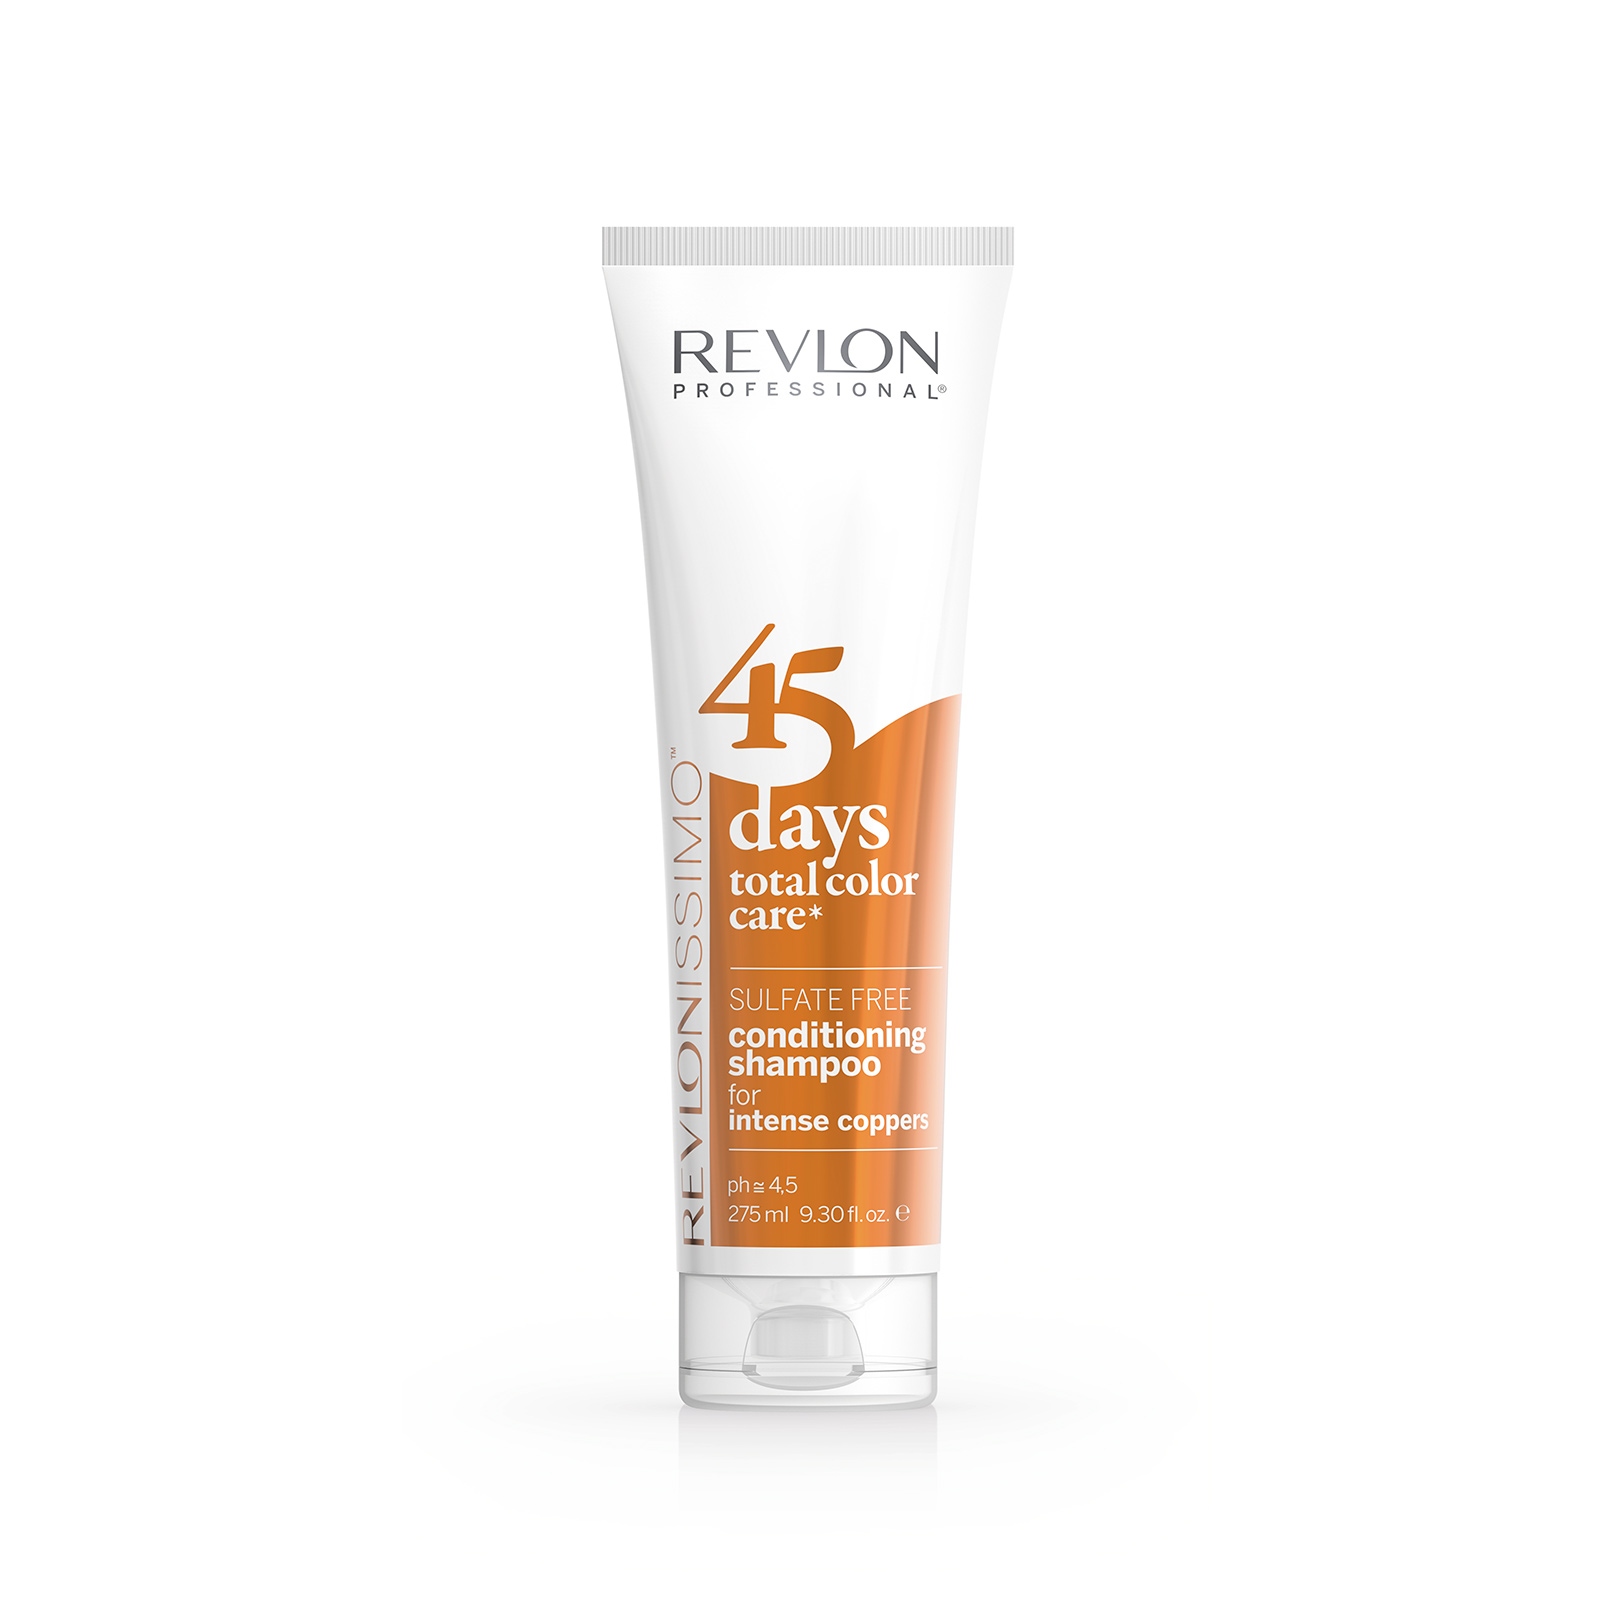 Шампуни для волос:  REVLON Professional -  Шампунь-кондиционер для Медных оттенков 45 Days Shampoo INTENS COPPERS (275 мл)